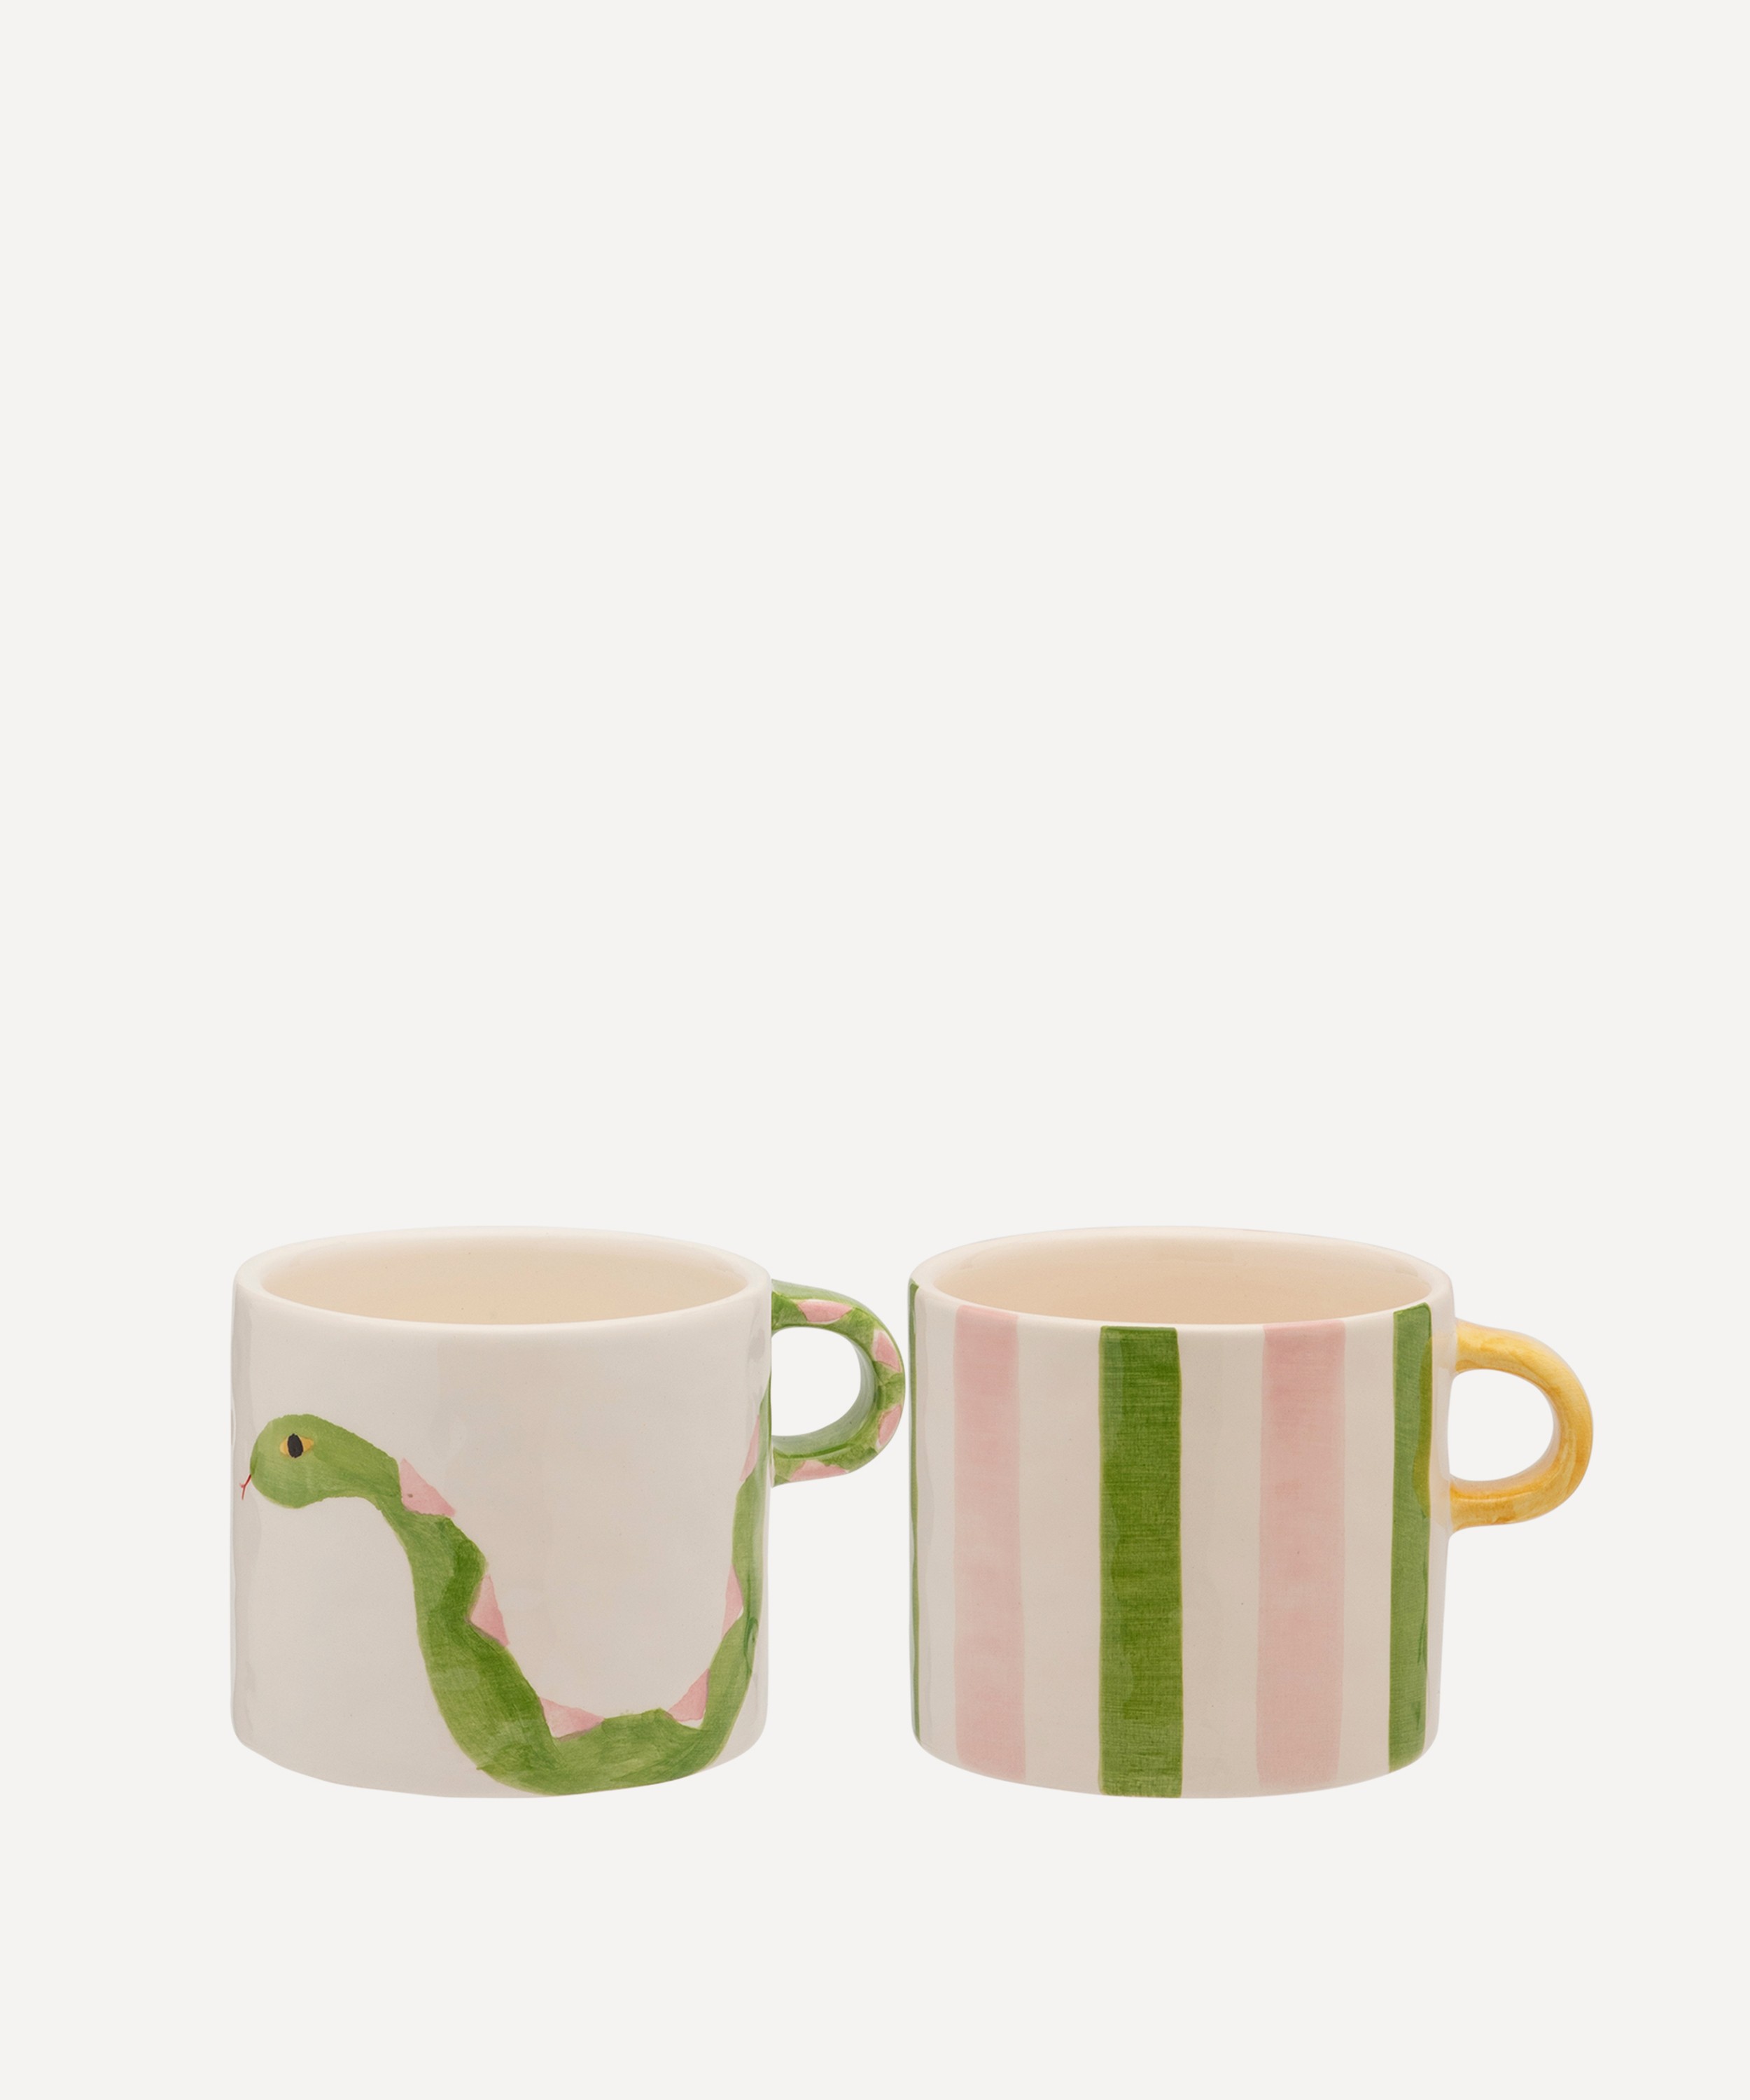 Anna + Nina - Serpent and Ribbon Mug Set of Two